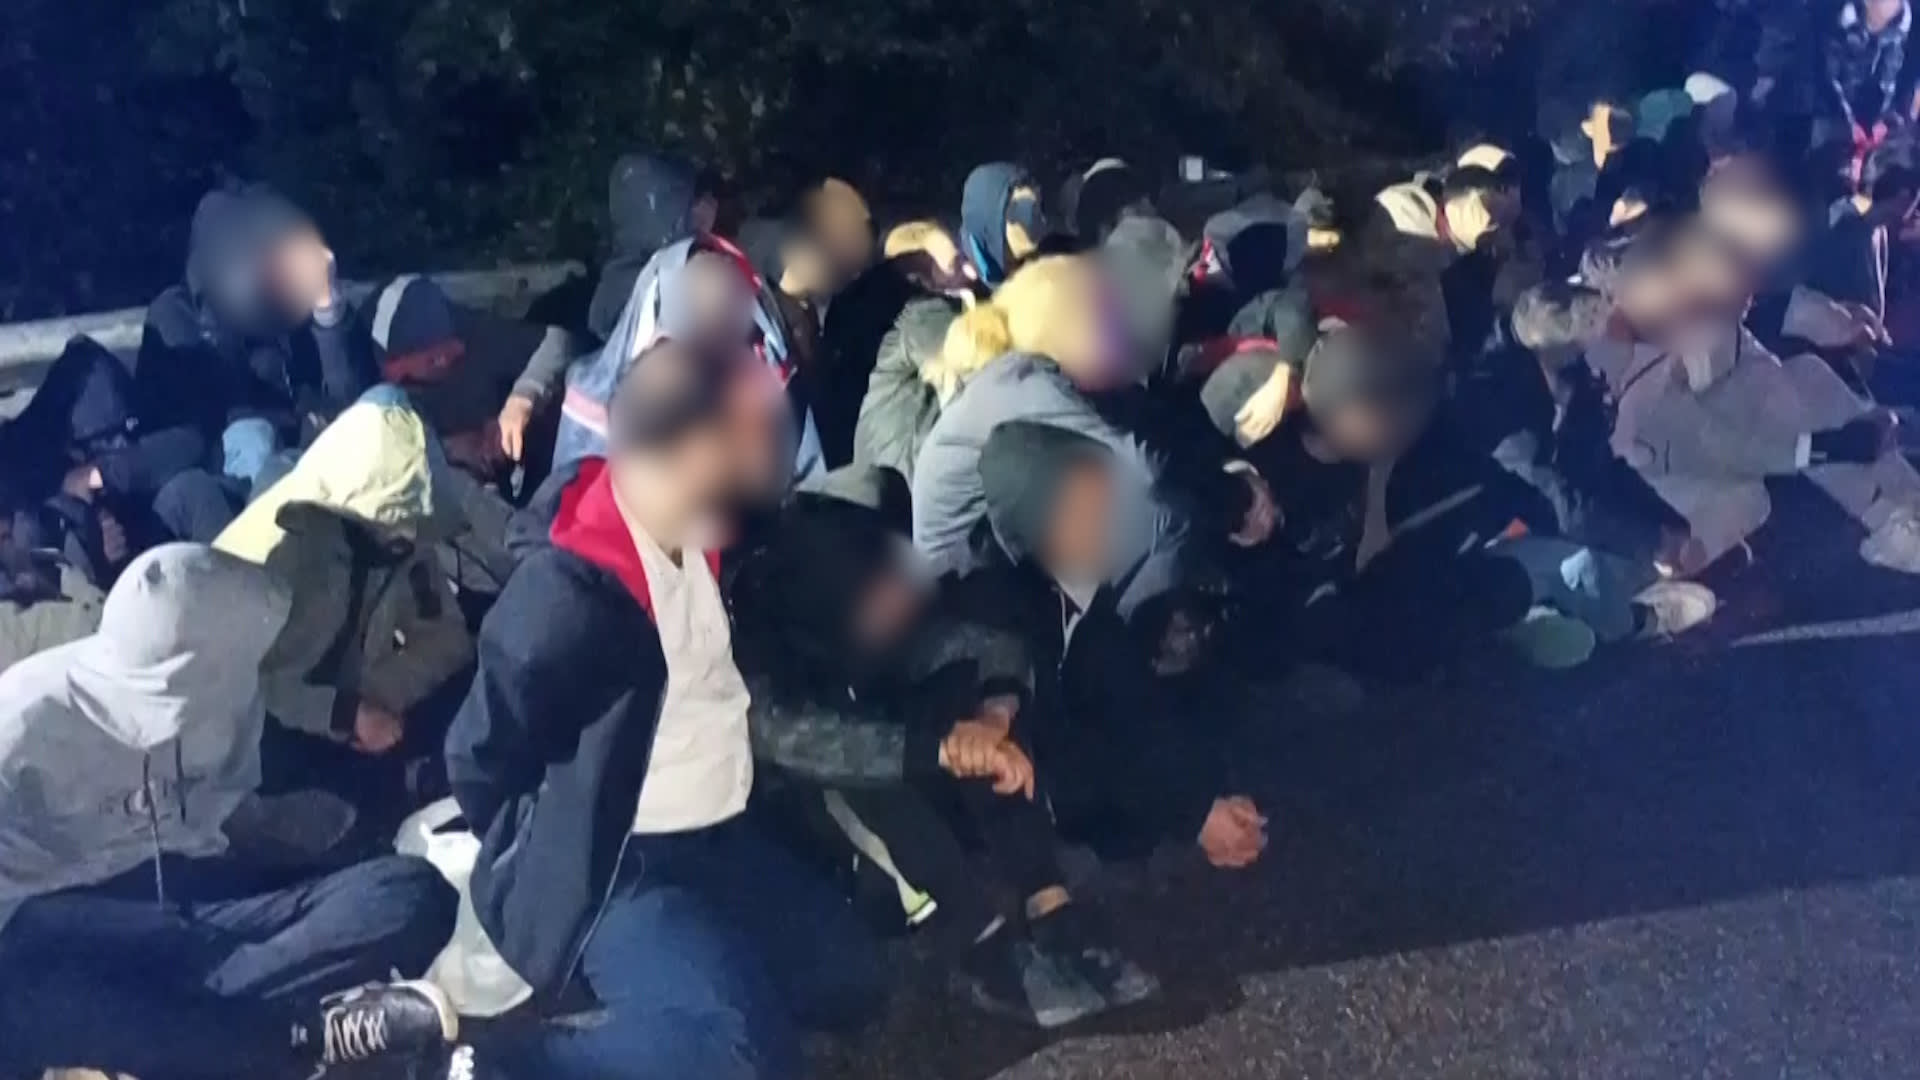 V nákladním voze Policie odhalila 70 migrantů